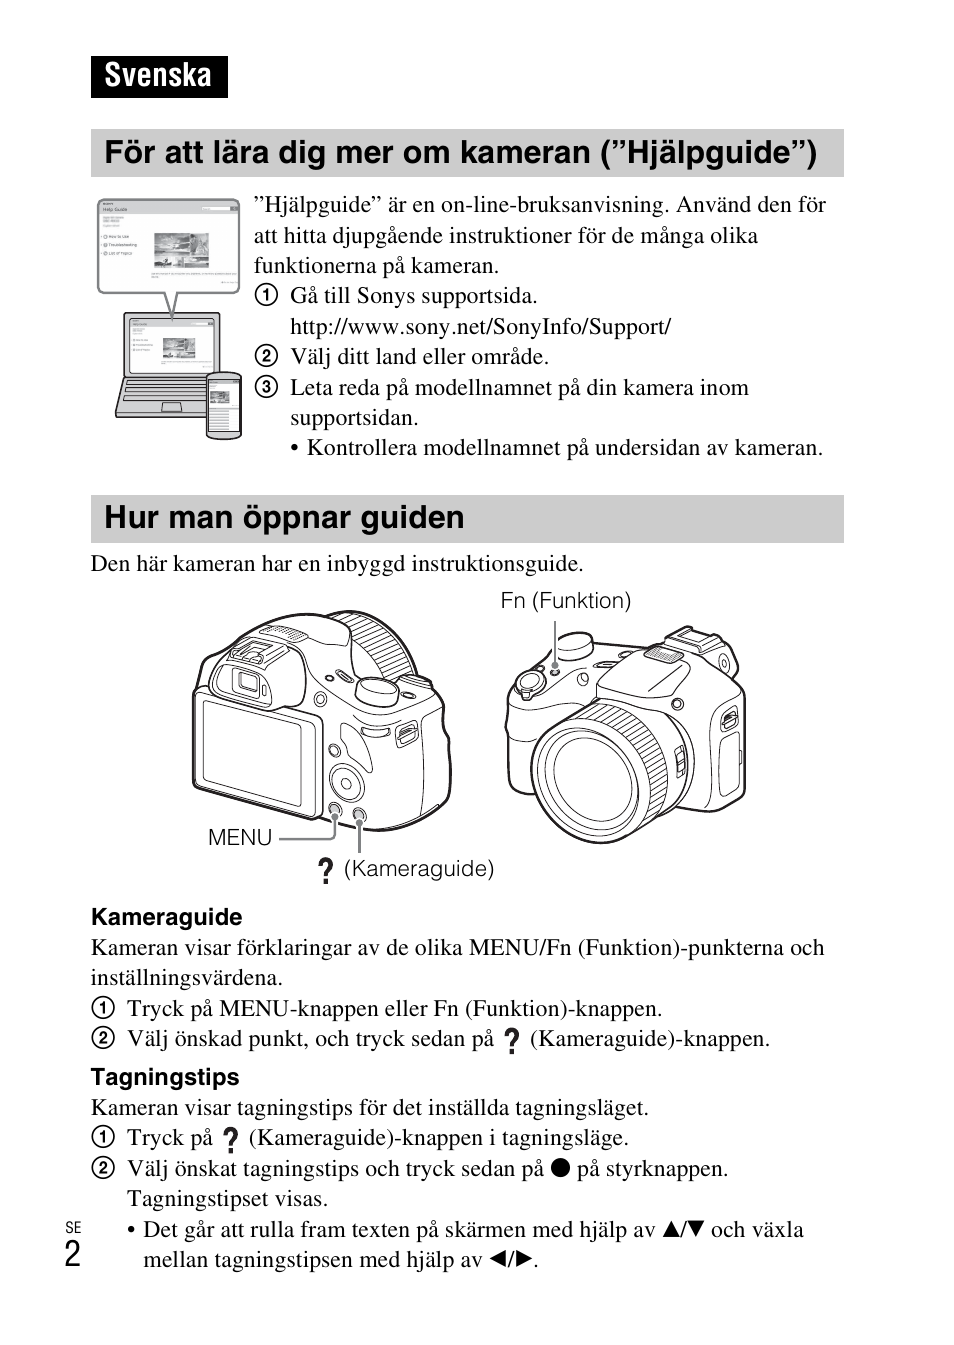 Svenska, För att lära dig mer om kameran (”hjälpguide”), Hur man öppnar guiden | Sony DSC-HX400V User Manual | Page 404 / 539